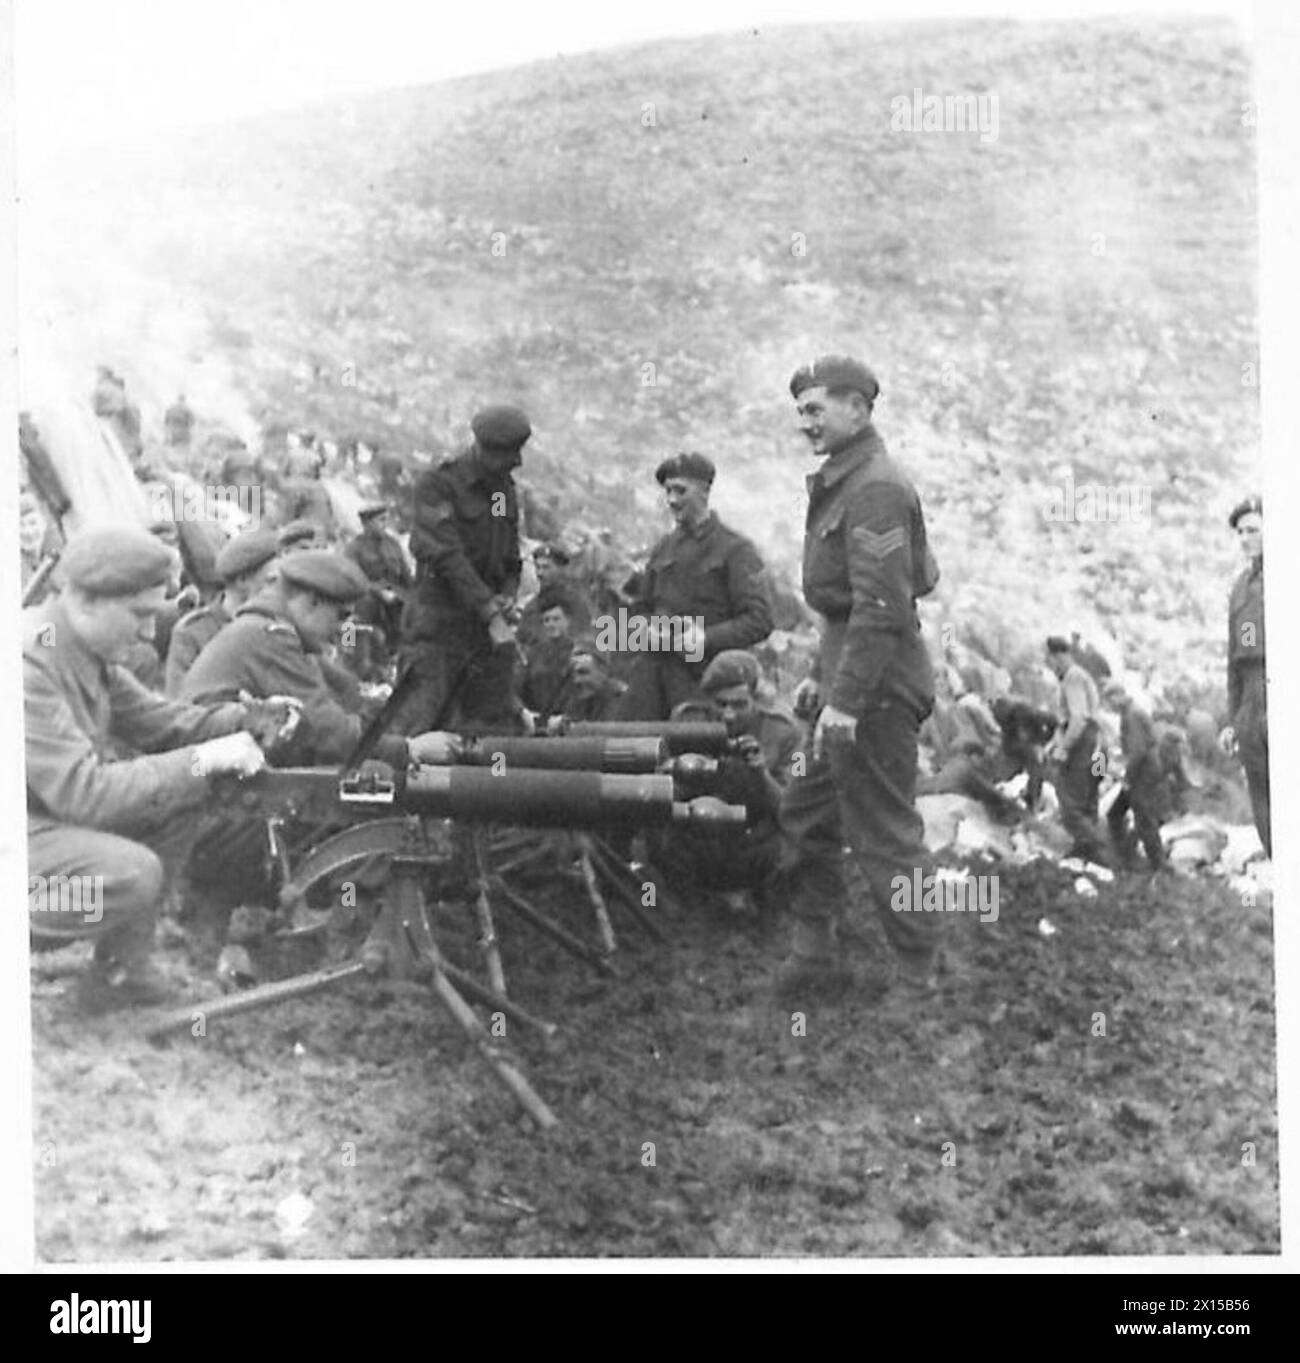 ITALIEN: 5. ARMEE (VERSCHIEDENE) - Männer der 3. BN. Walisische Garde, 1. BTN. Die 6. Panzerdivision putzt ihre Vickers-Maschinengewehre, bevor sie die britische Armee verlassen Stockfoto